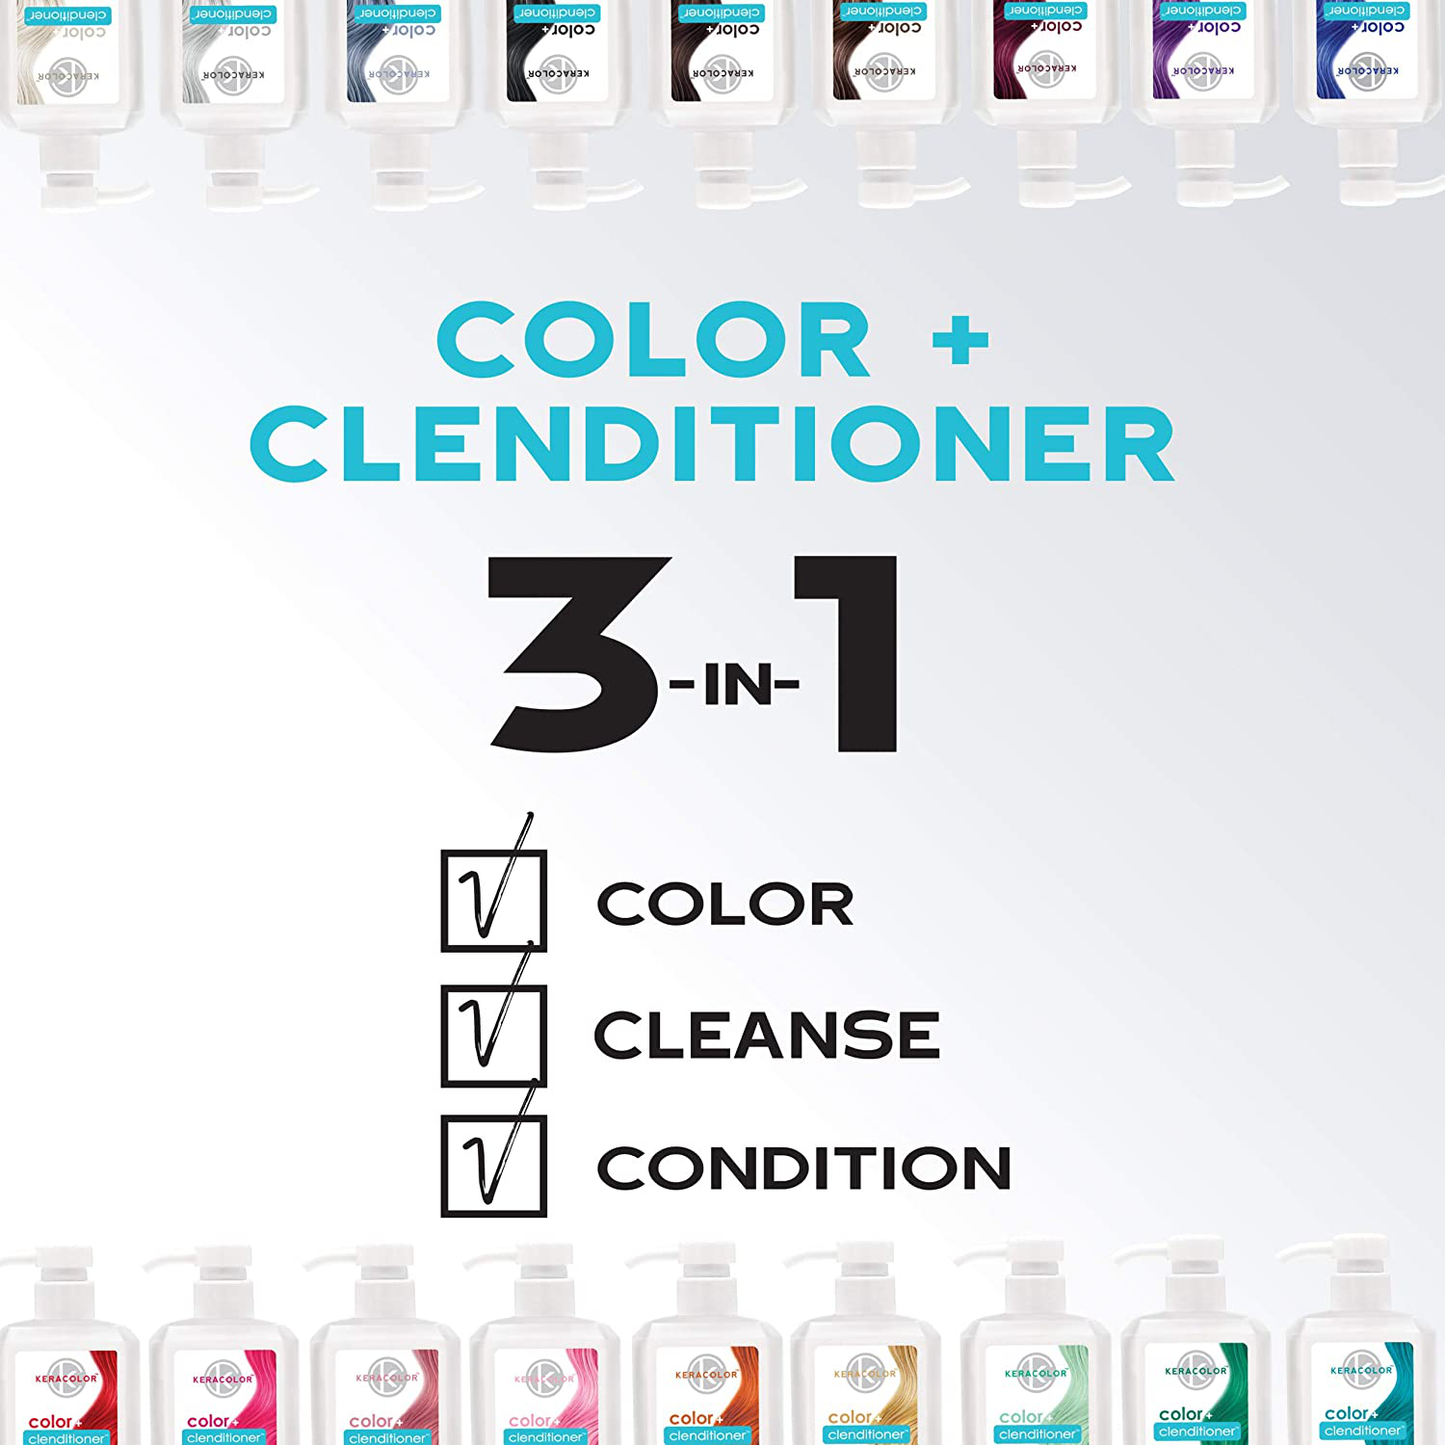 Keracolor Clenditioner Color Depositing Conditioner